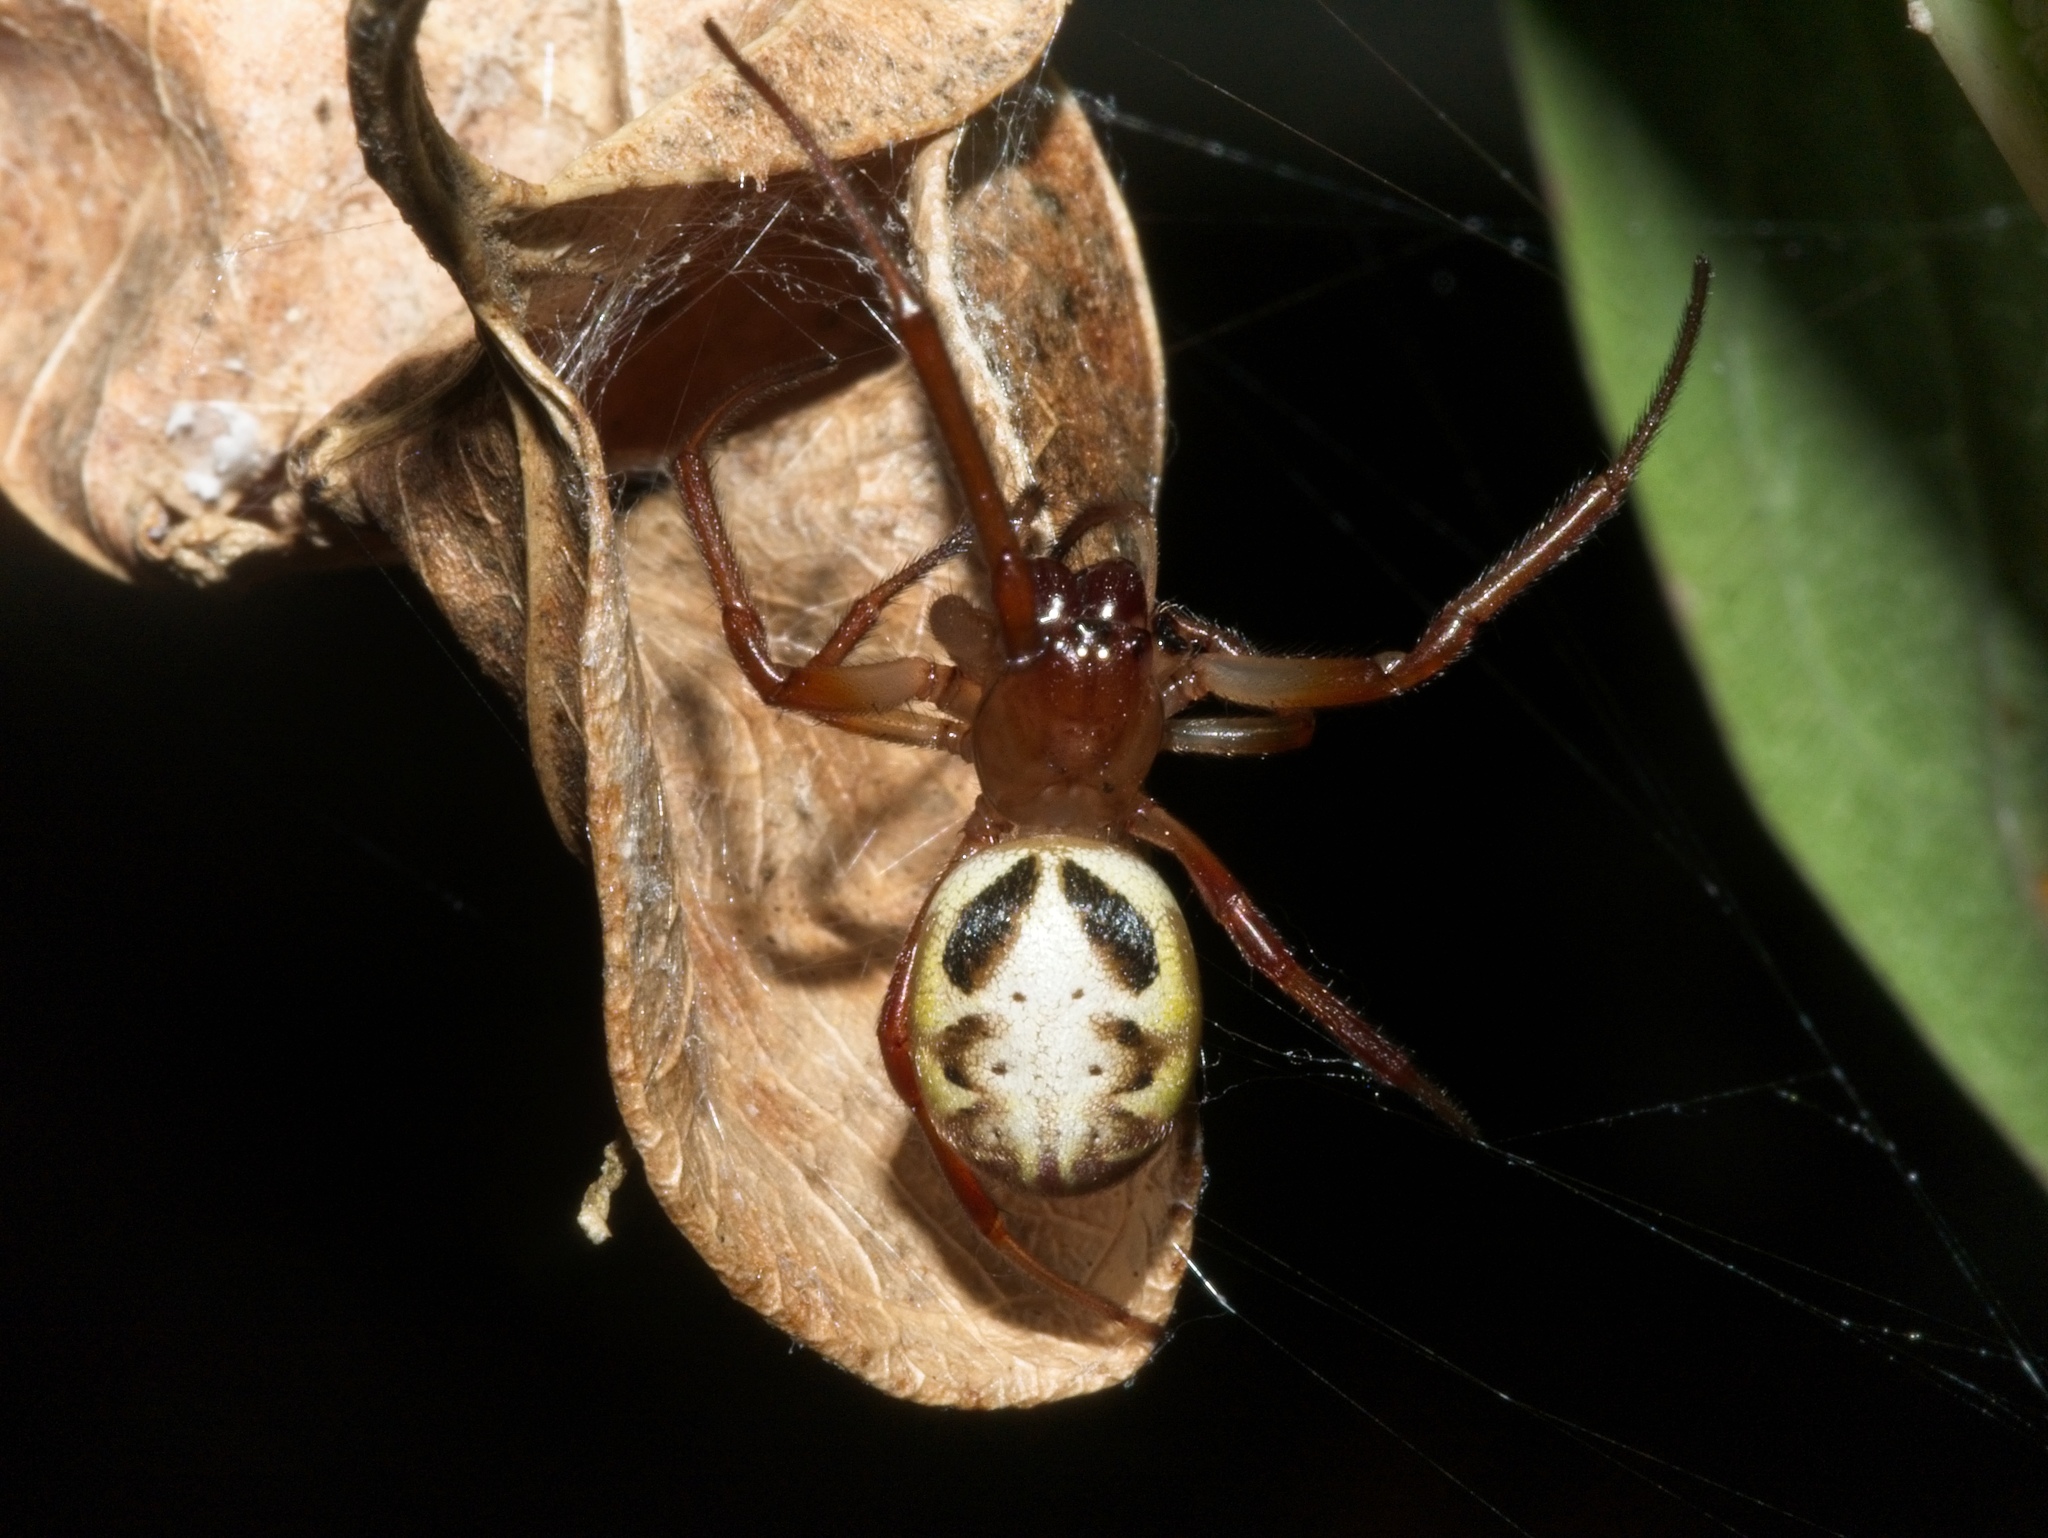 File:Slack leaf curling spider (3375407106).jpg - Wikimedia Commons